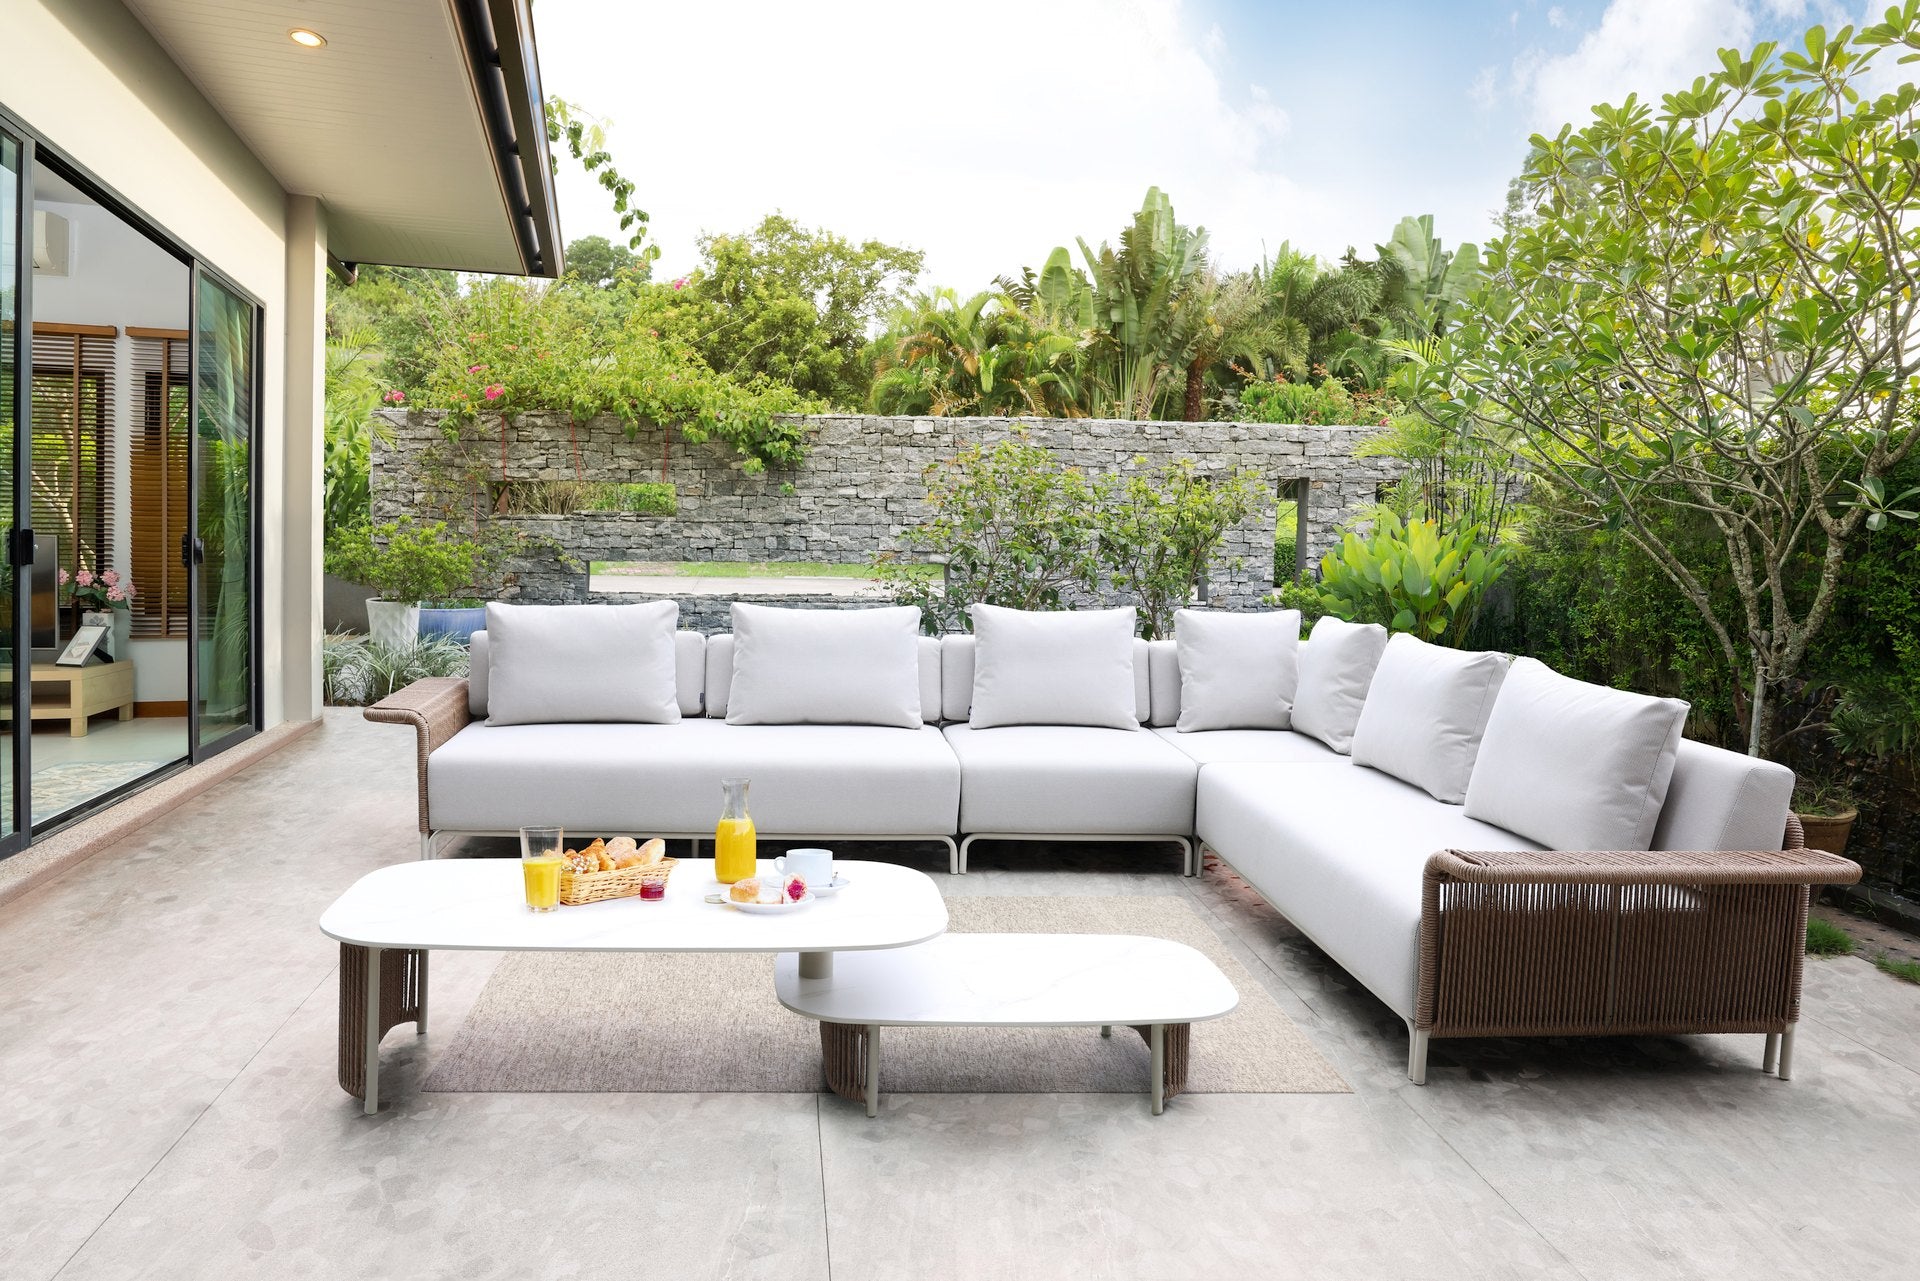 Moderne Cassidy Loungegruppe mit Eckbank, Fauteuil und multifunktionalem Couchtisch, eingebettet in einen grünen Garten mit vielseitigen Sitzoptionen und erweiterbarem Mittelelement, umgeben von üppiger Vegetation.